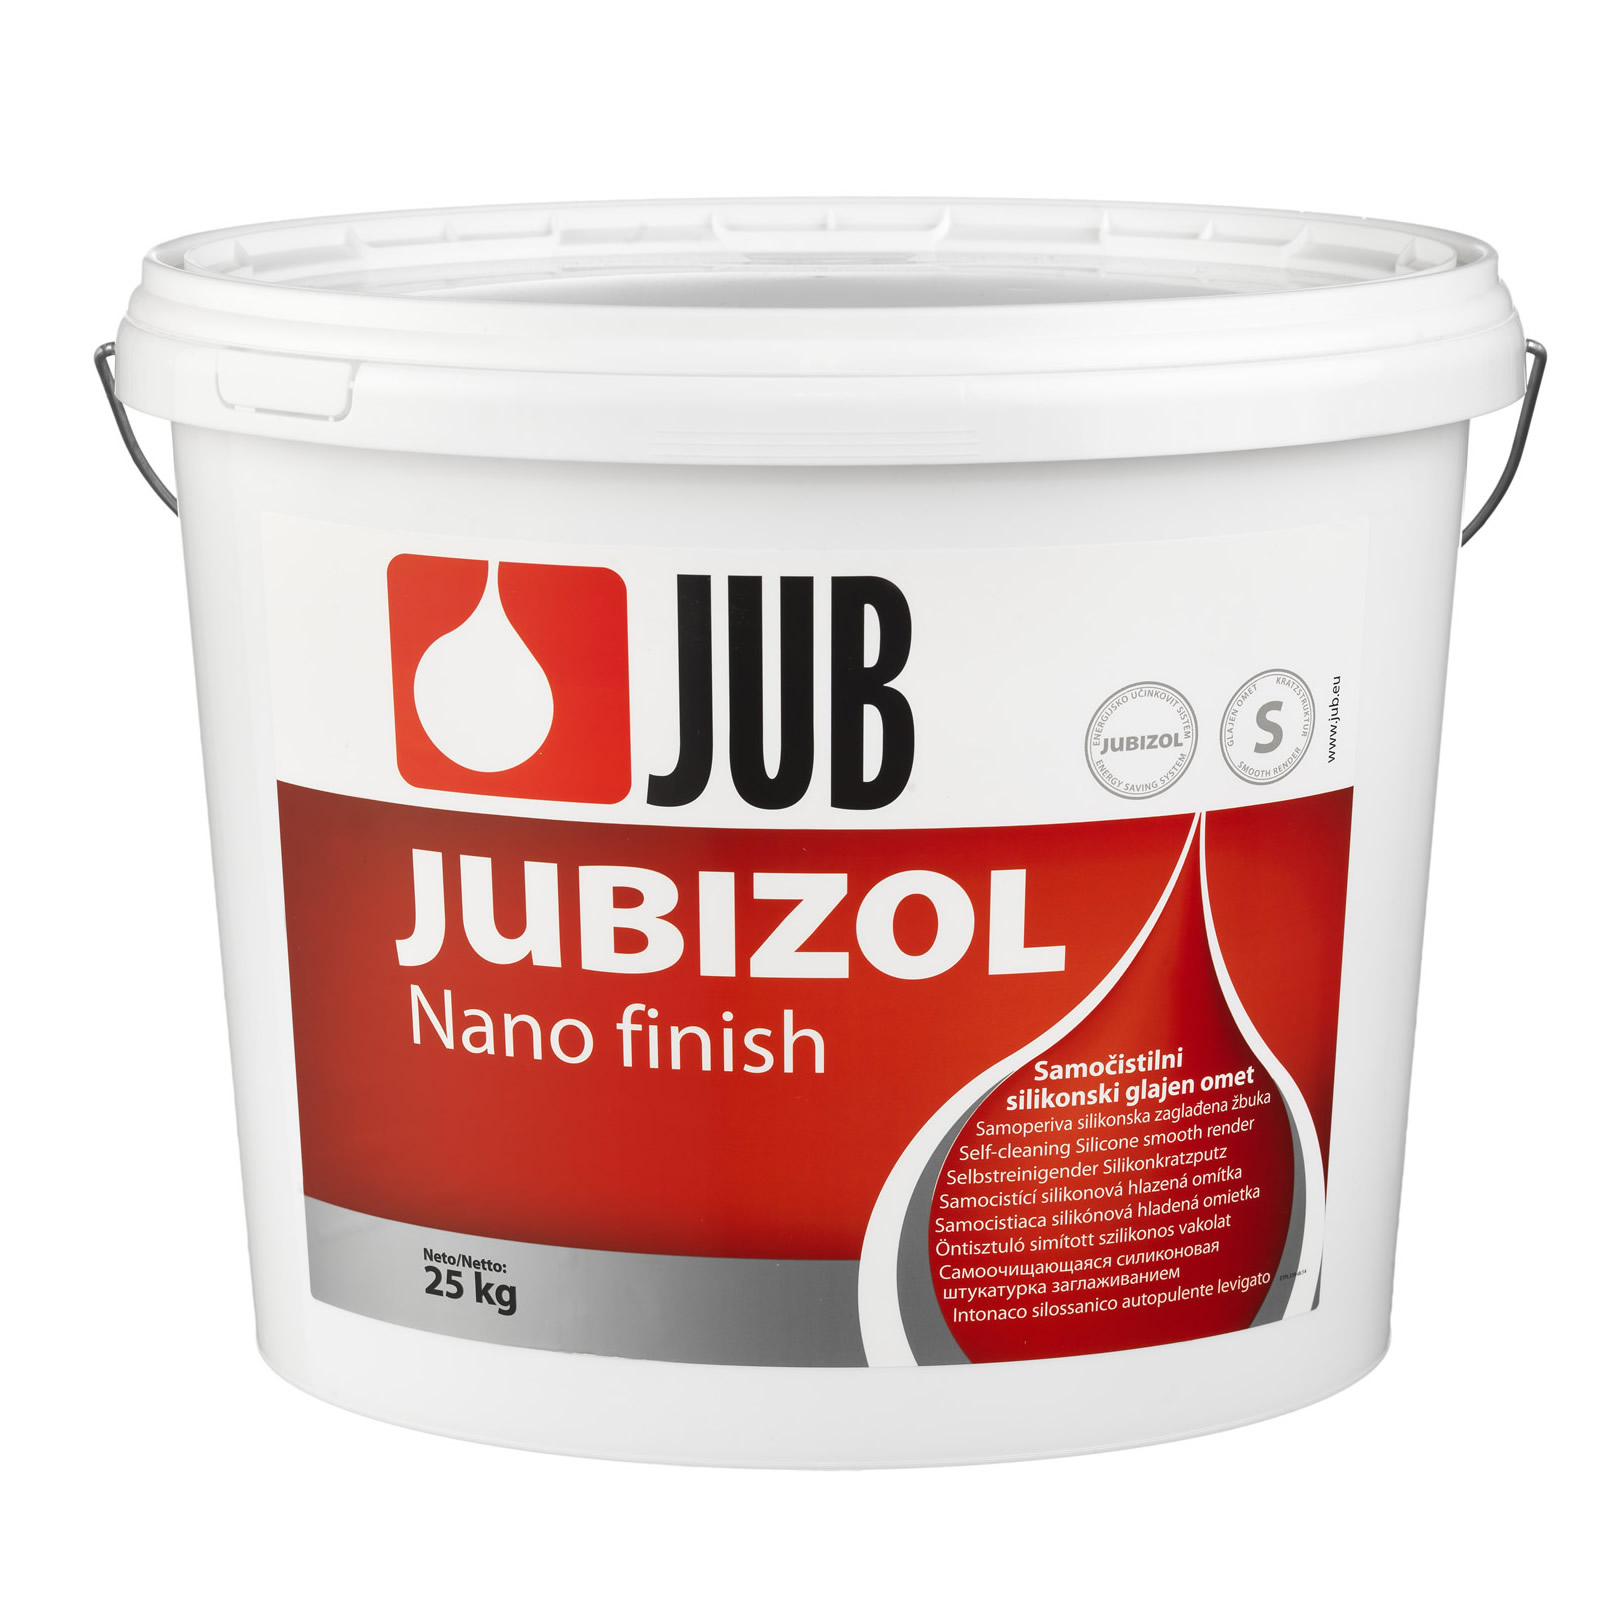 JUBIZOL Nano Finish S 1.5 és 2.0 öntisztuló simított szilikonos vakolat